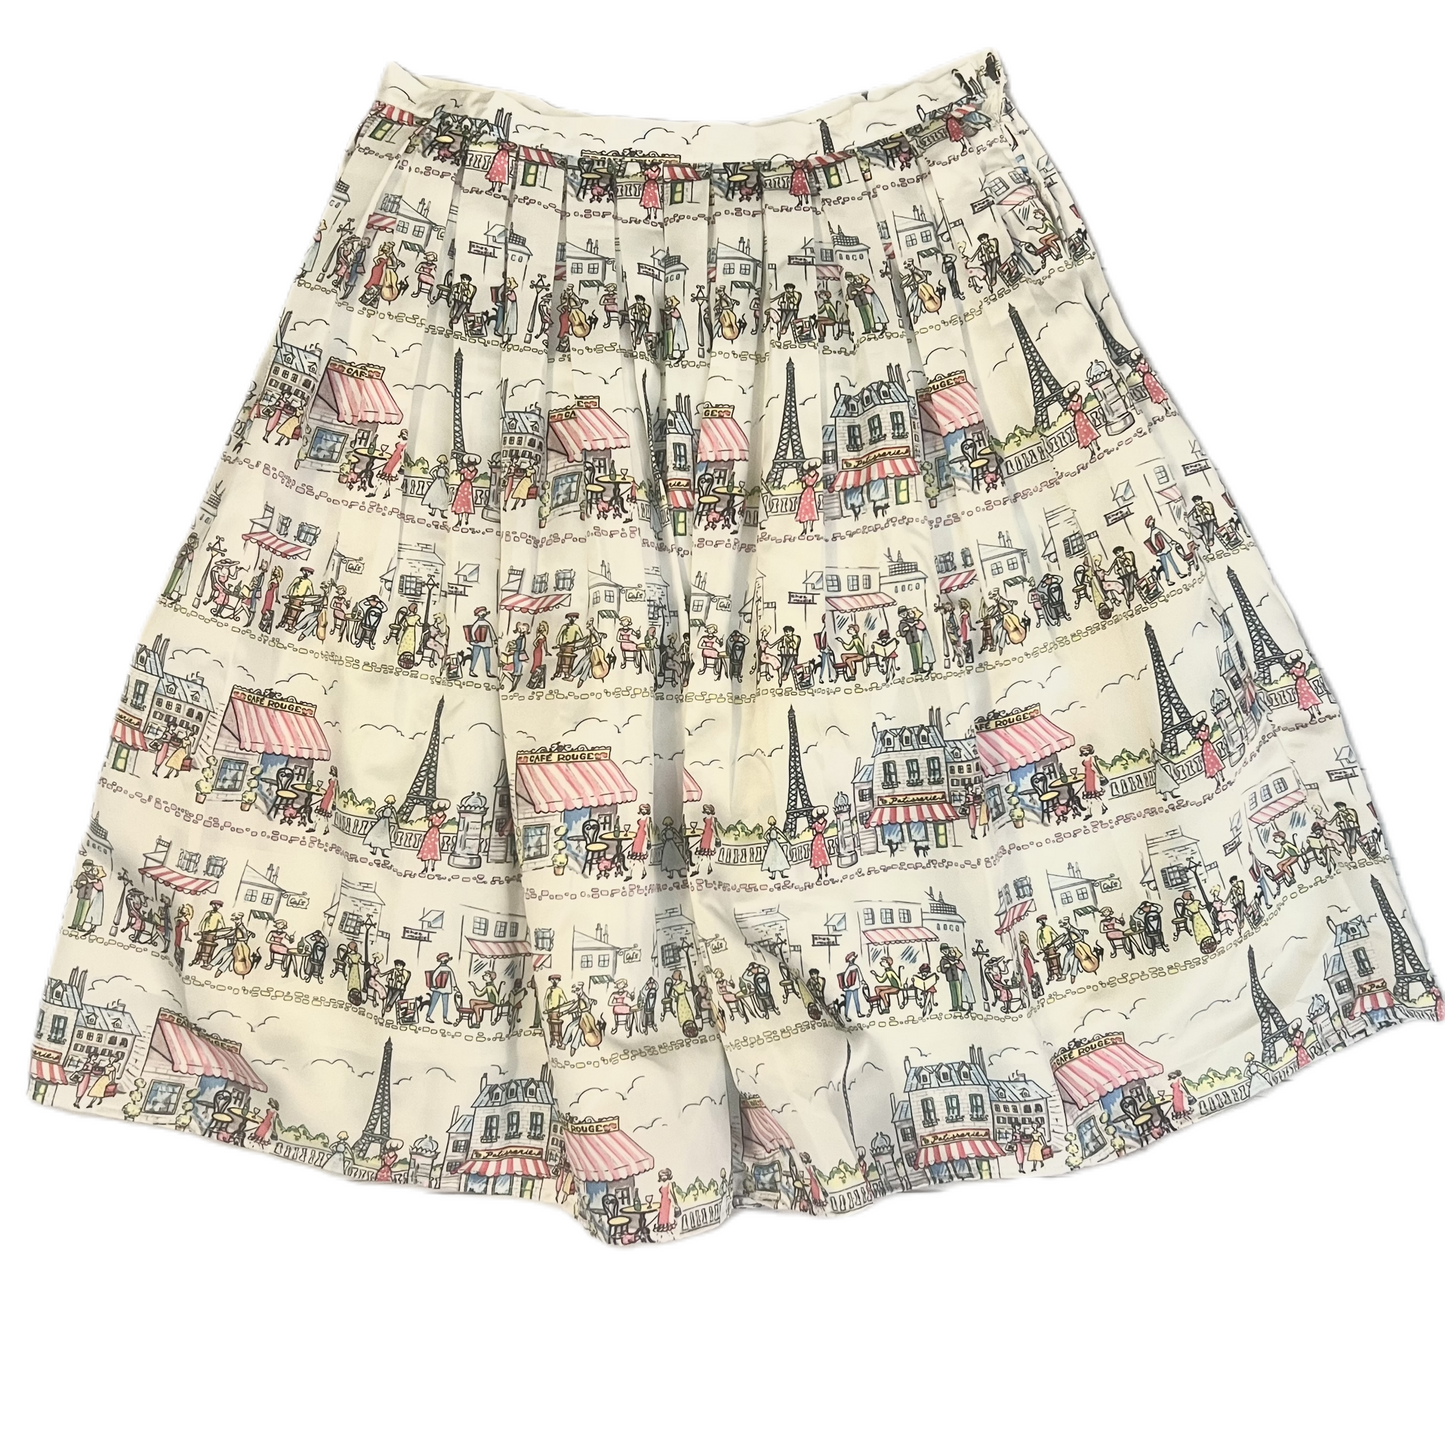 Skirt Midi By Chic Wish Size: Xxxl